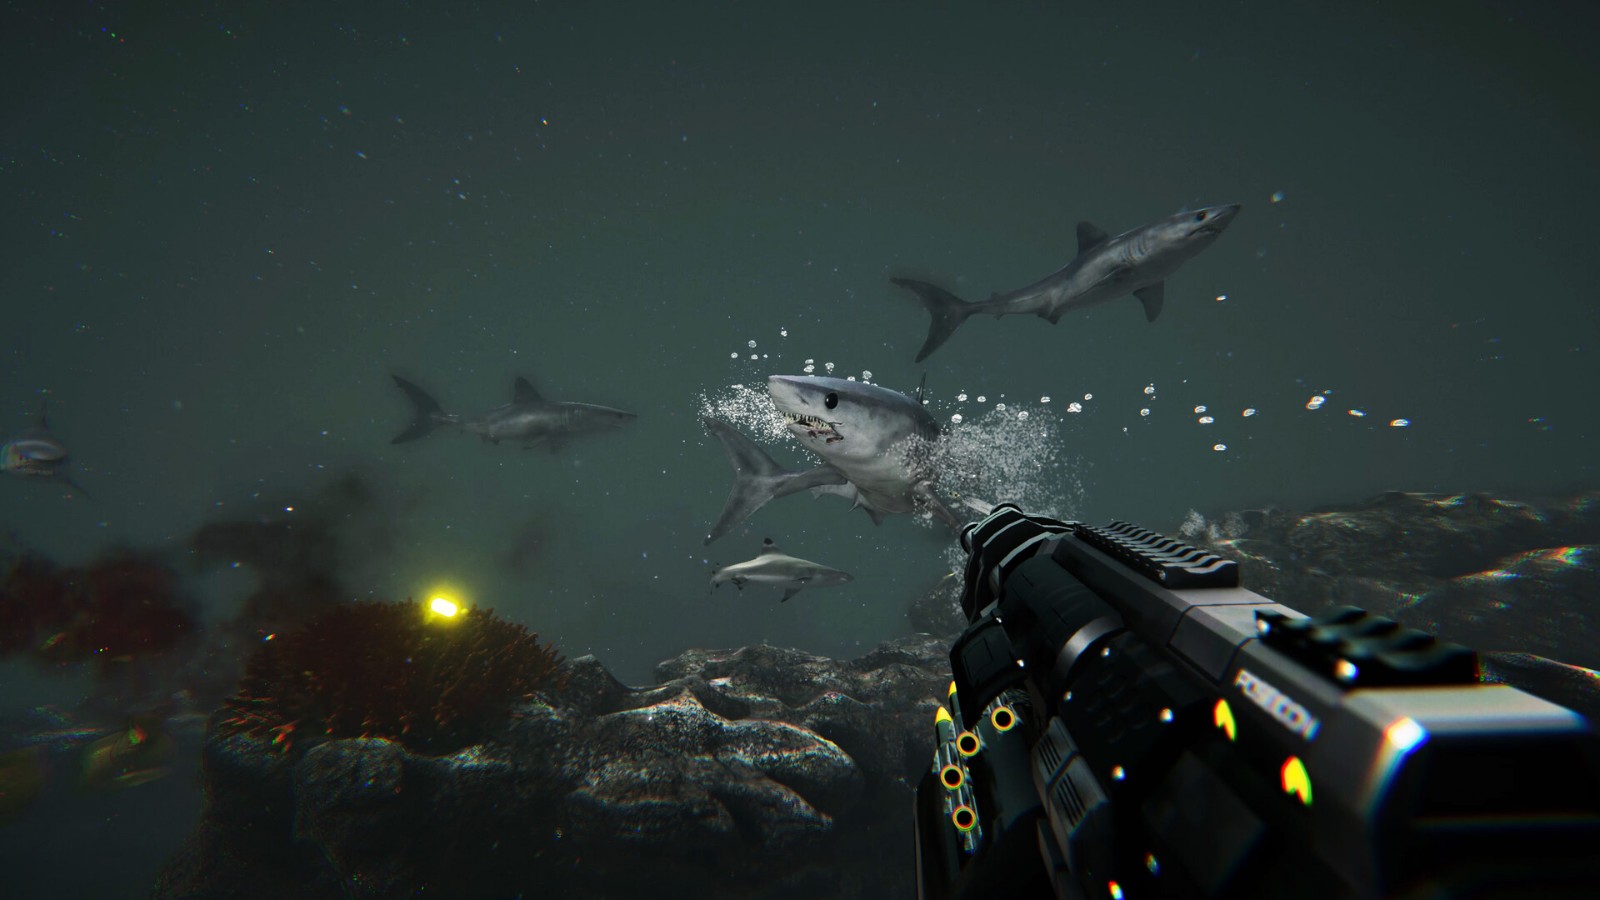 恐怖水下射击游戏《死在水中2》Steam多半好评